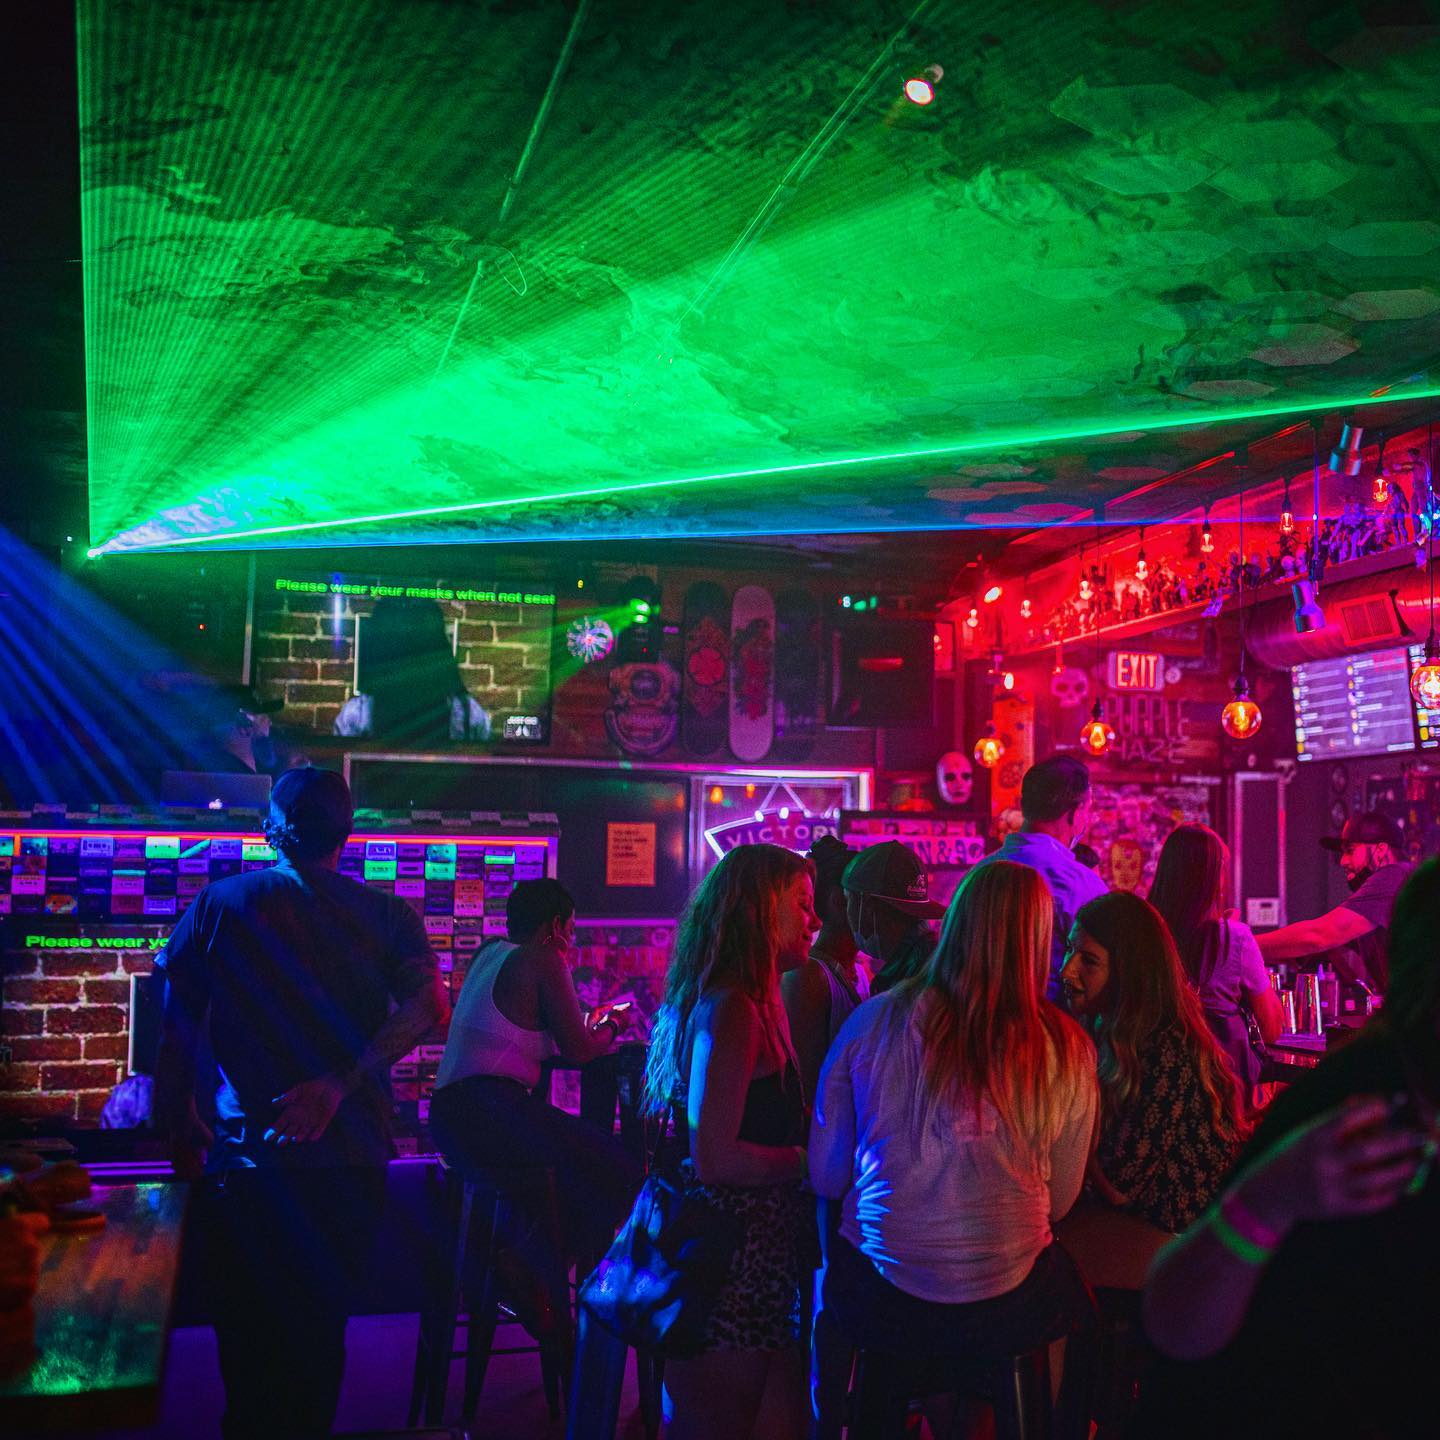 Saturday nights at Glitch Bar are always 🔥 #glitchbar